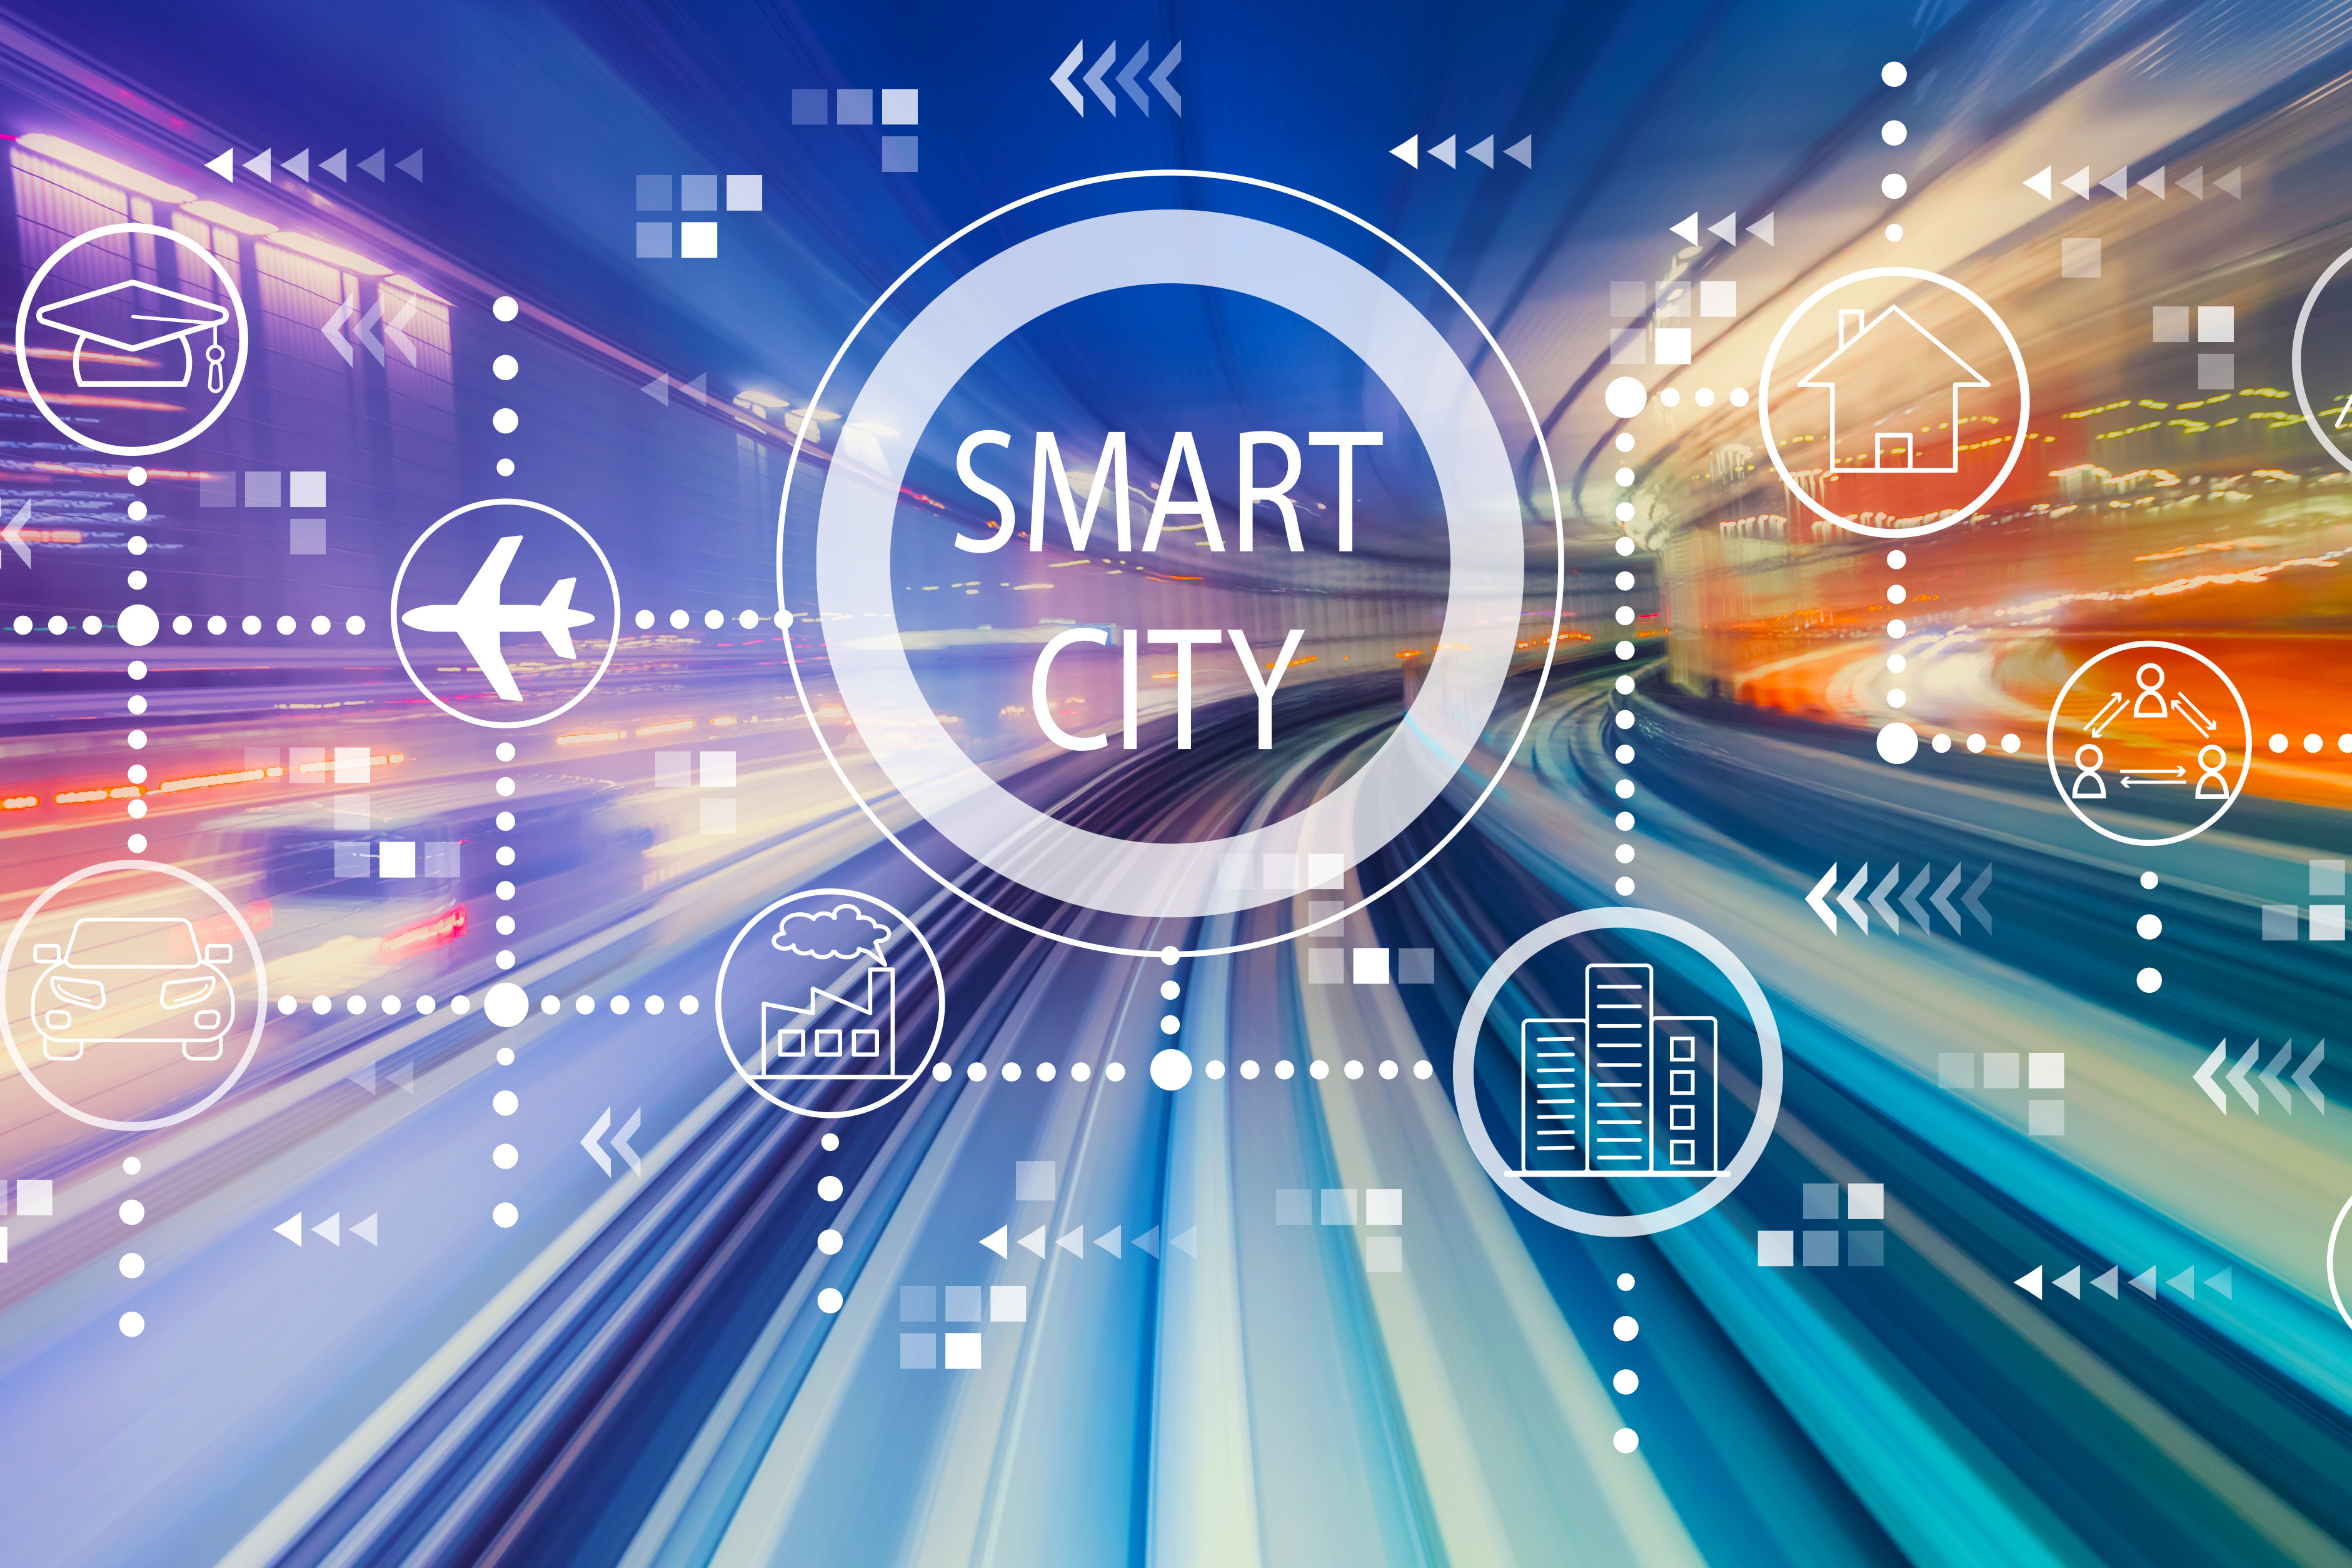 Ideensammlung für Smart City läuft bis 31.5.